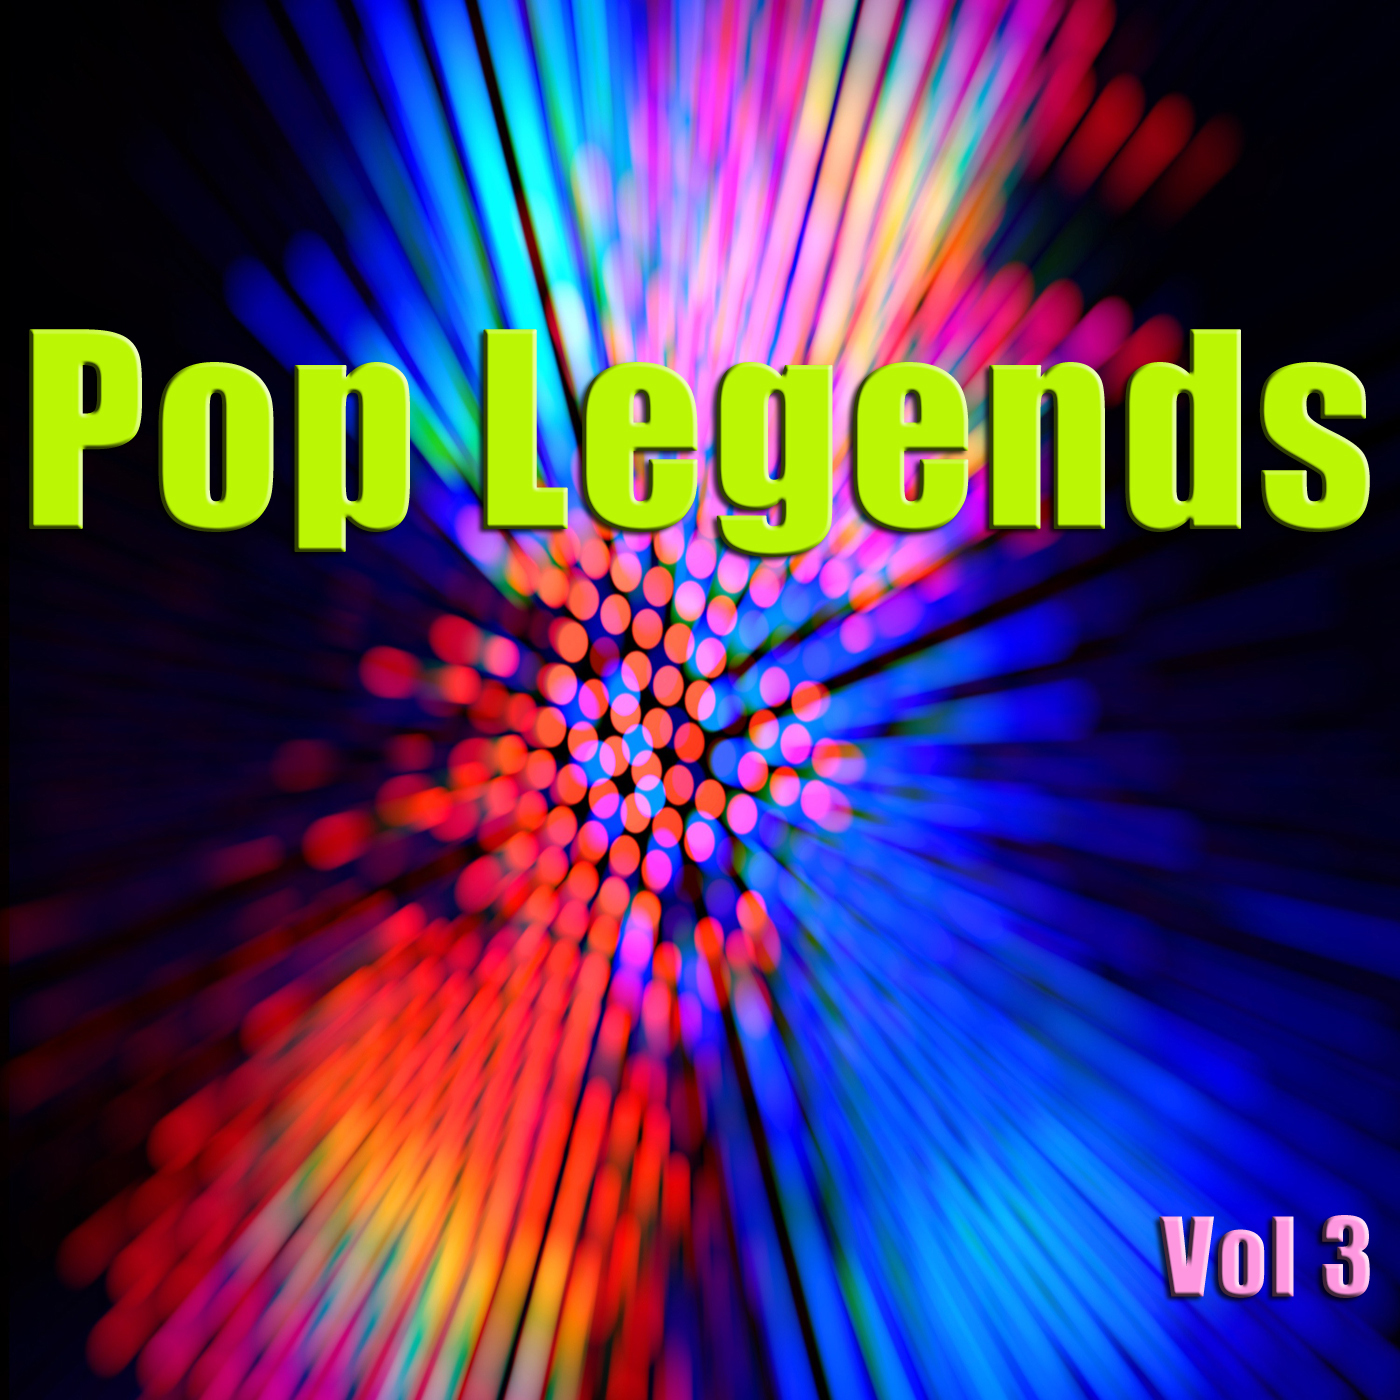 Pop Legends Vol 3